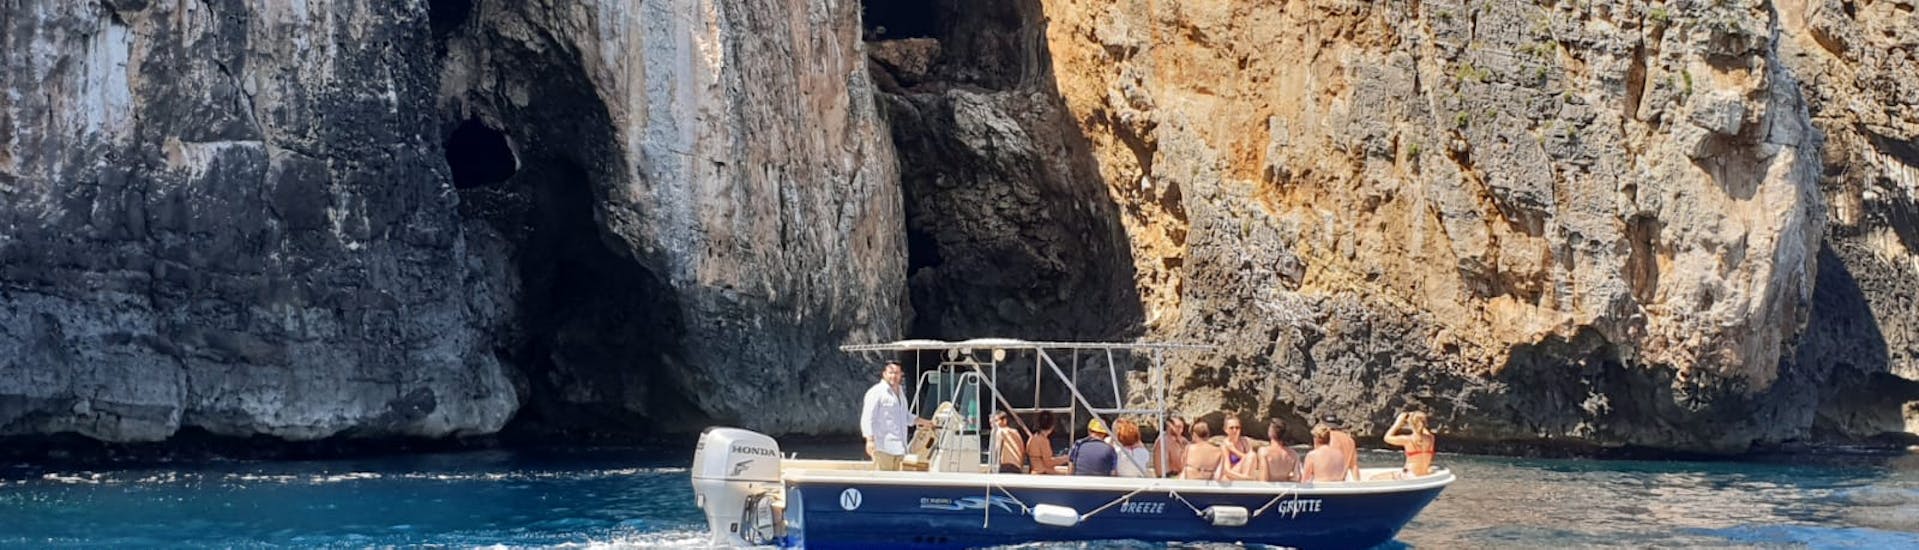 Unser Boot fährt während der Bootstour zu den Höhlen von Santa Maria di Leuca mit Mittagessen vor den Höhlen vorbei.